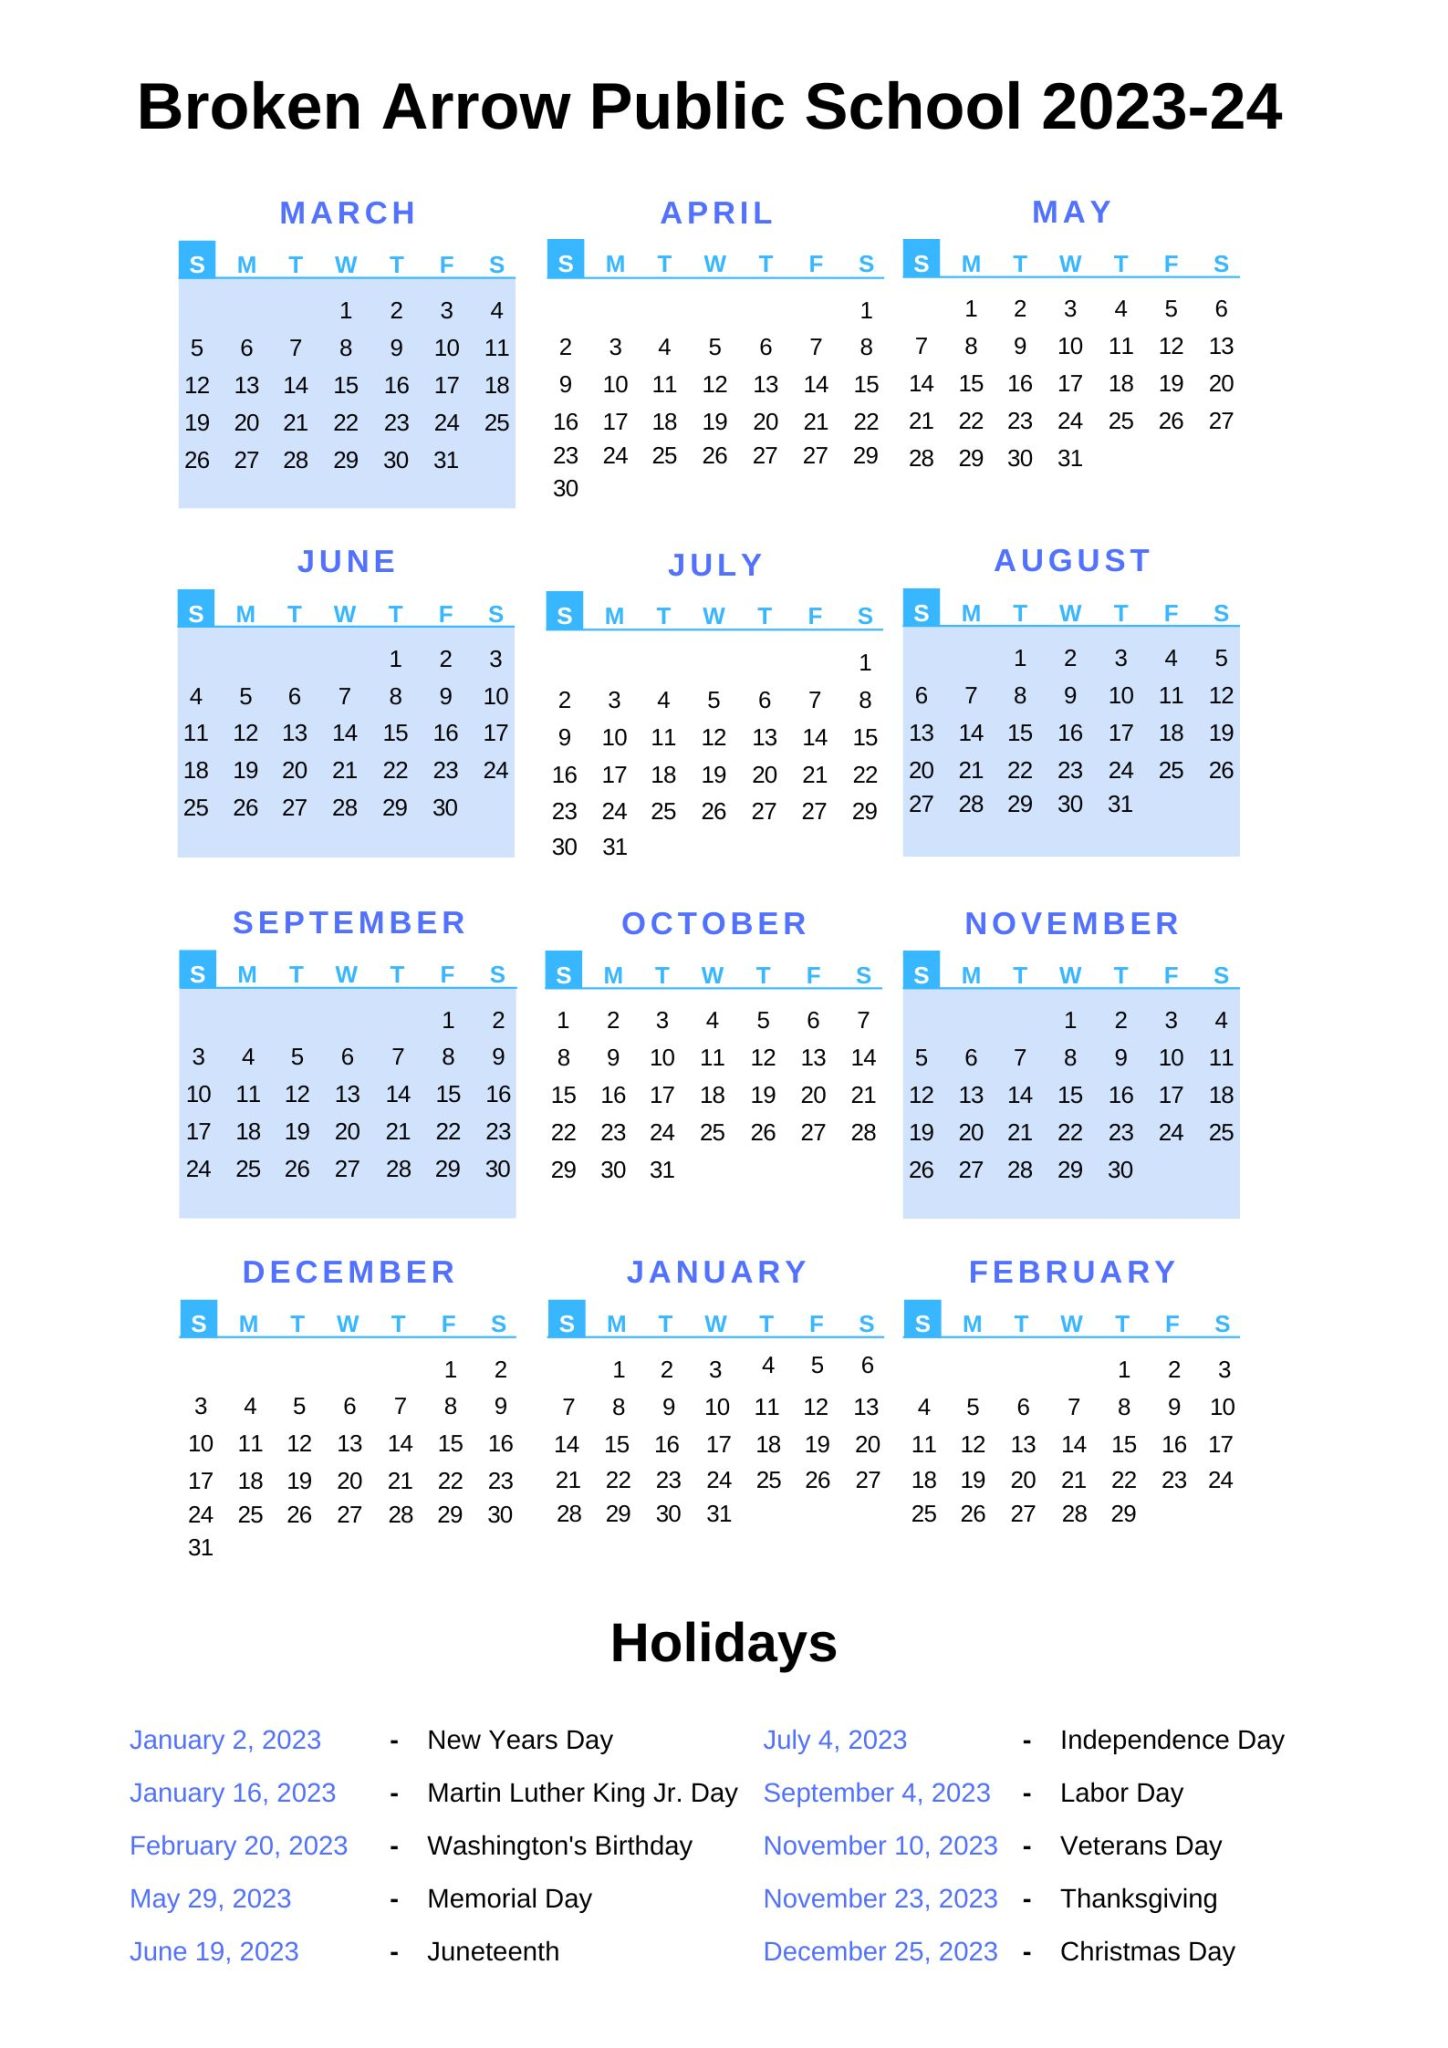 Broken Arrow Public Schools Calendar [BAS] 202324 Holidays